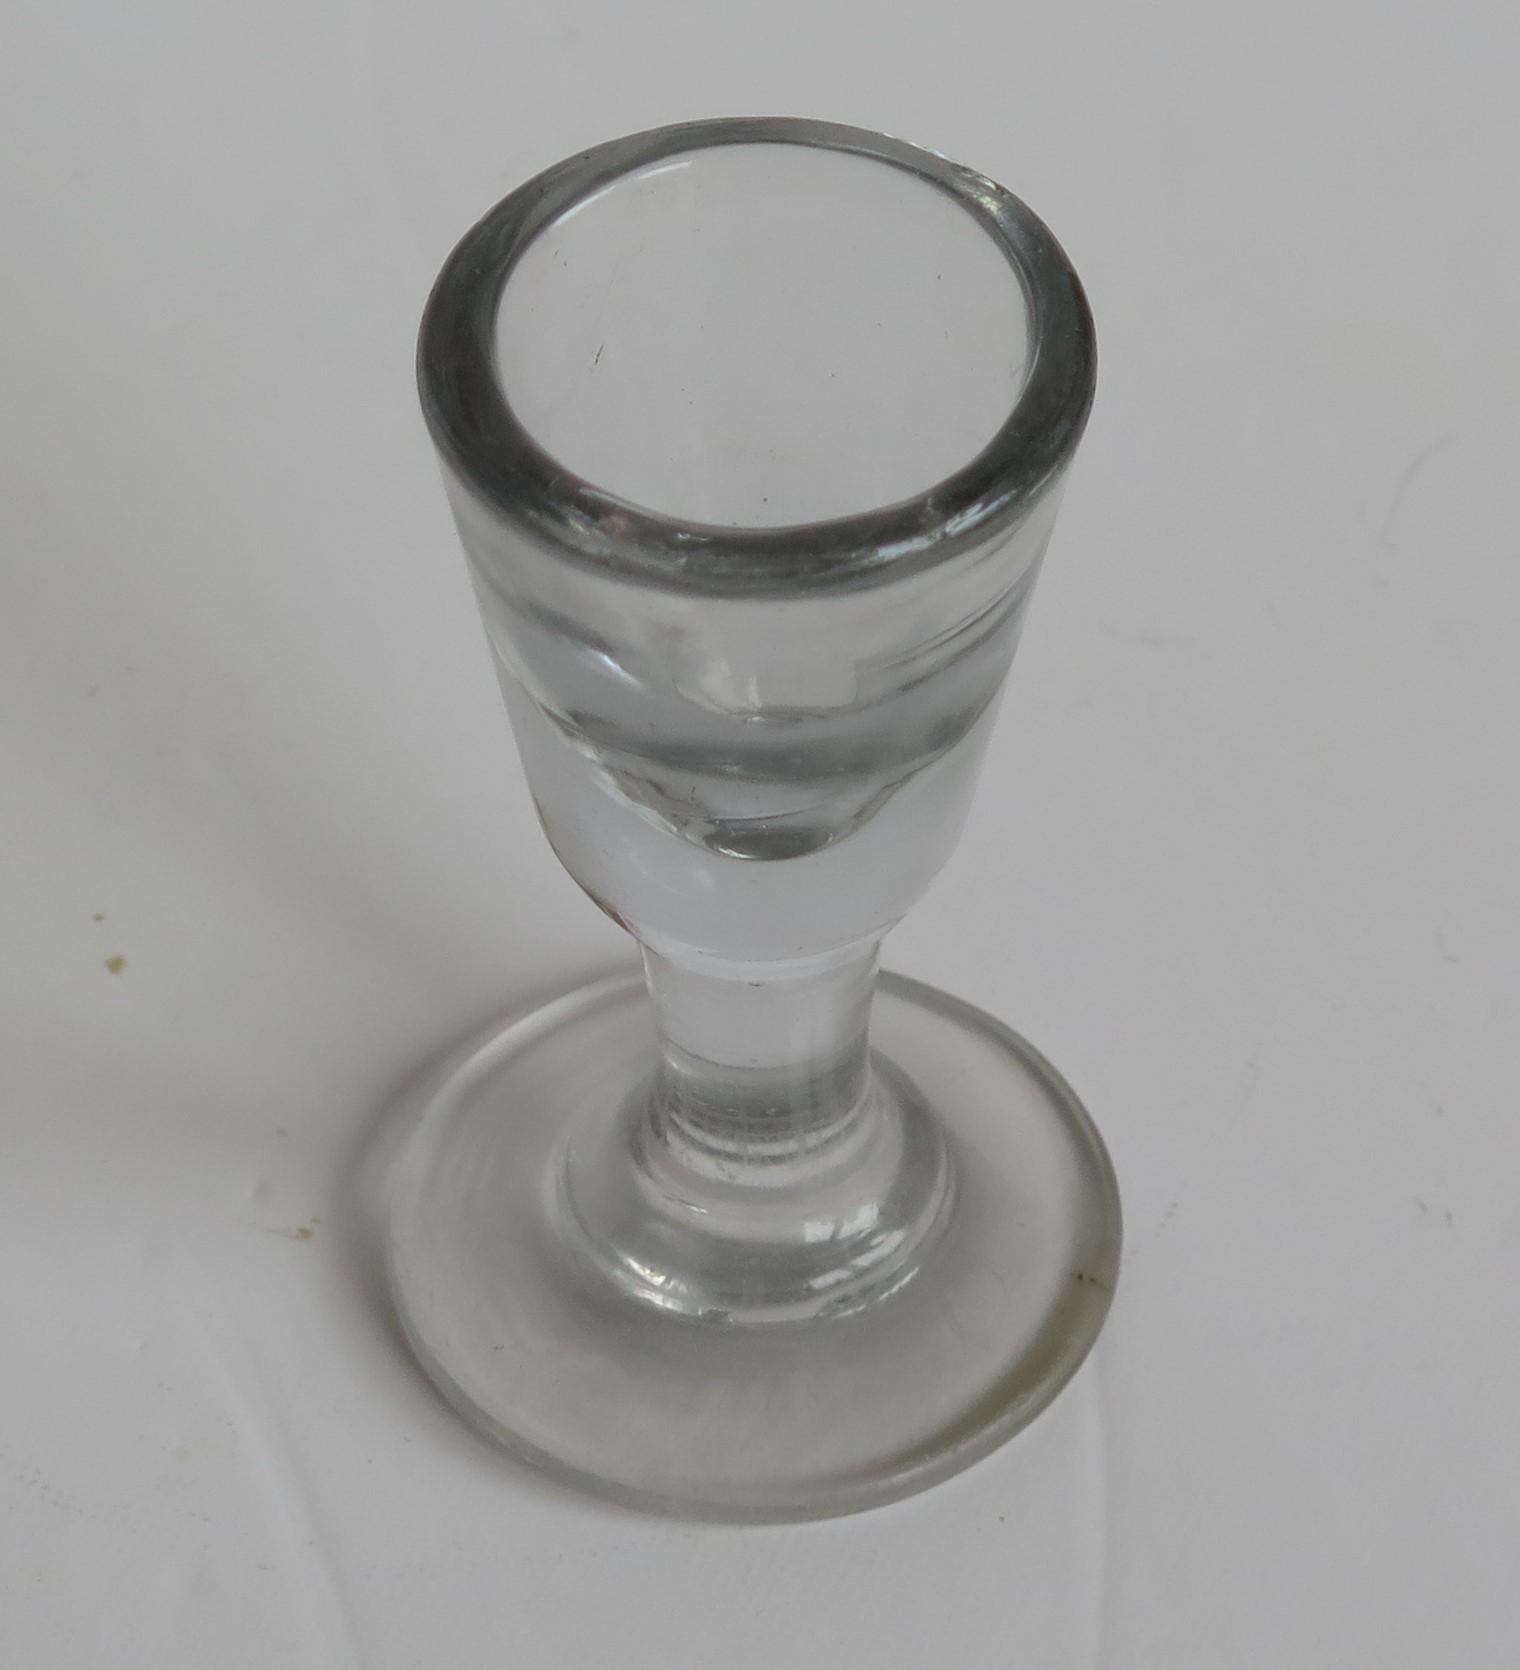 Dies ist ein sehr gutes englisches mundgeblasenes, georgianisches Trinkglas, das wir auf die Wende des 18. Jahrhunderts, CIRCA 1800, datieren. 

Dieses Glas wird einzeln von Hand geblasen und besteht aus Bleiglas, das sich durch seine zartgraue